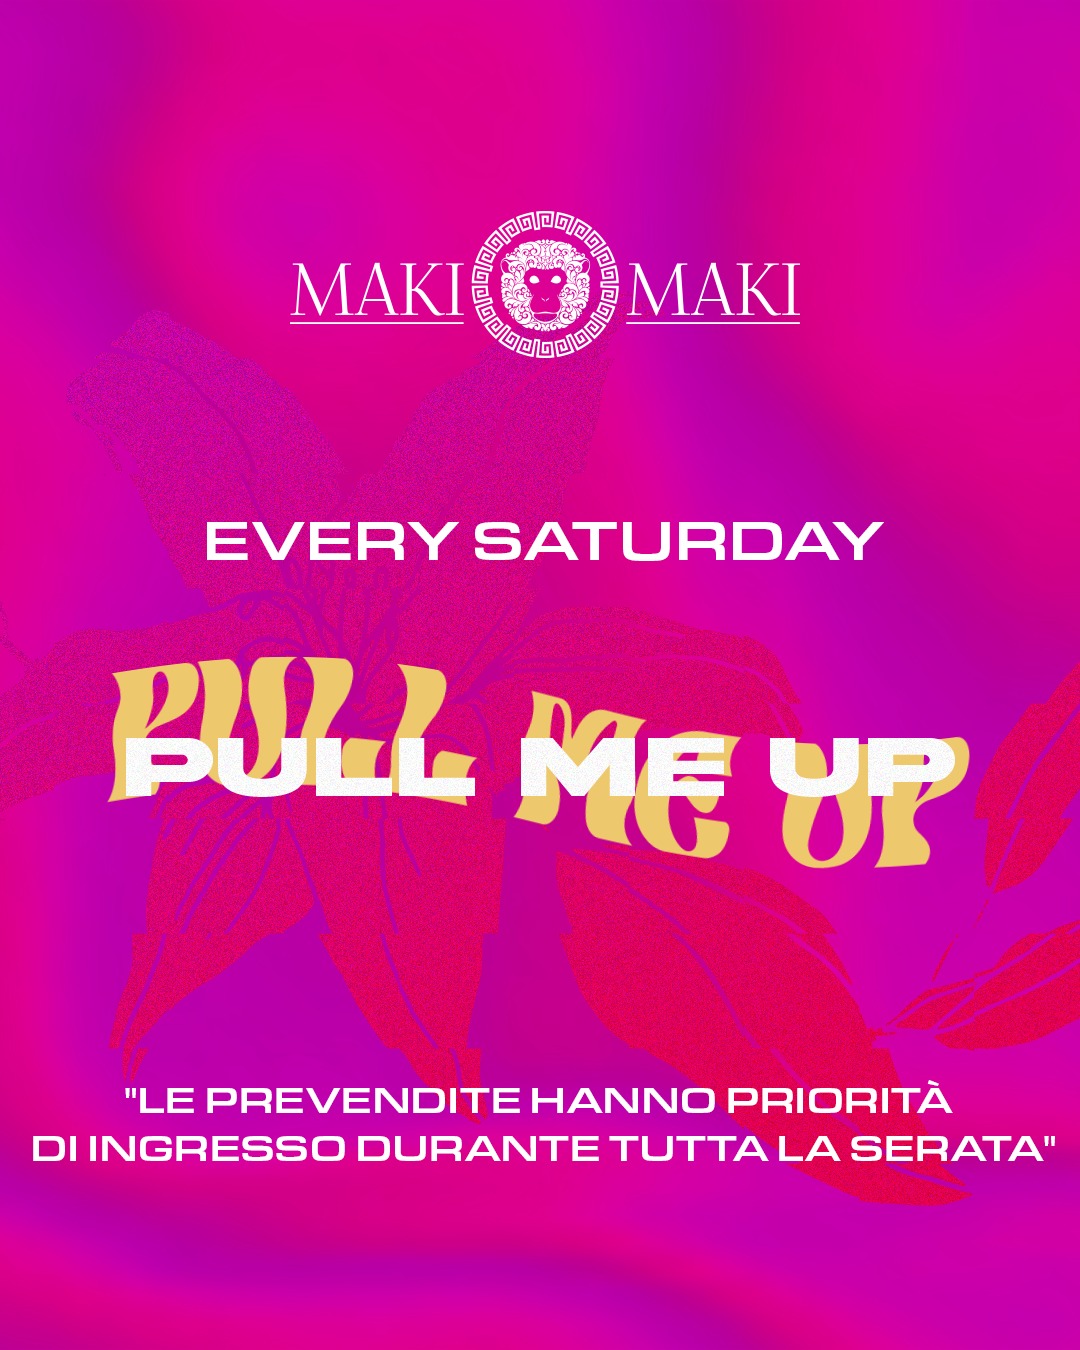 Pull me up @ Maki Maki